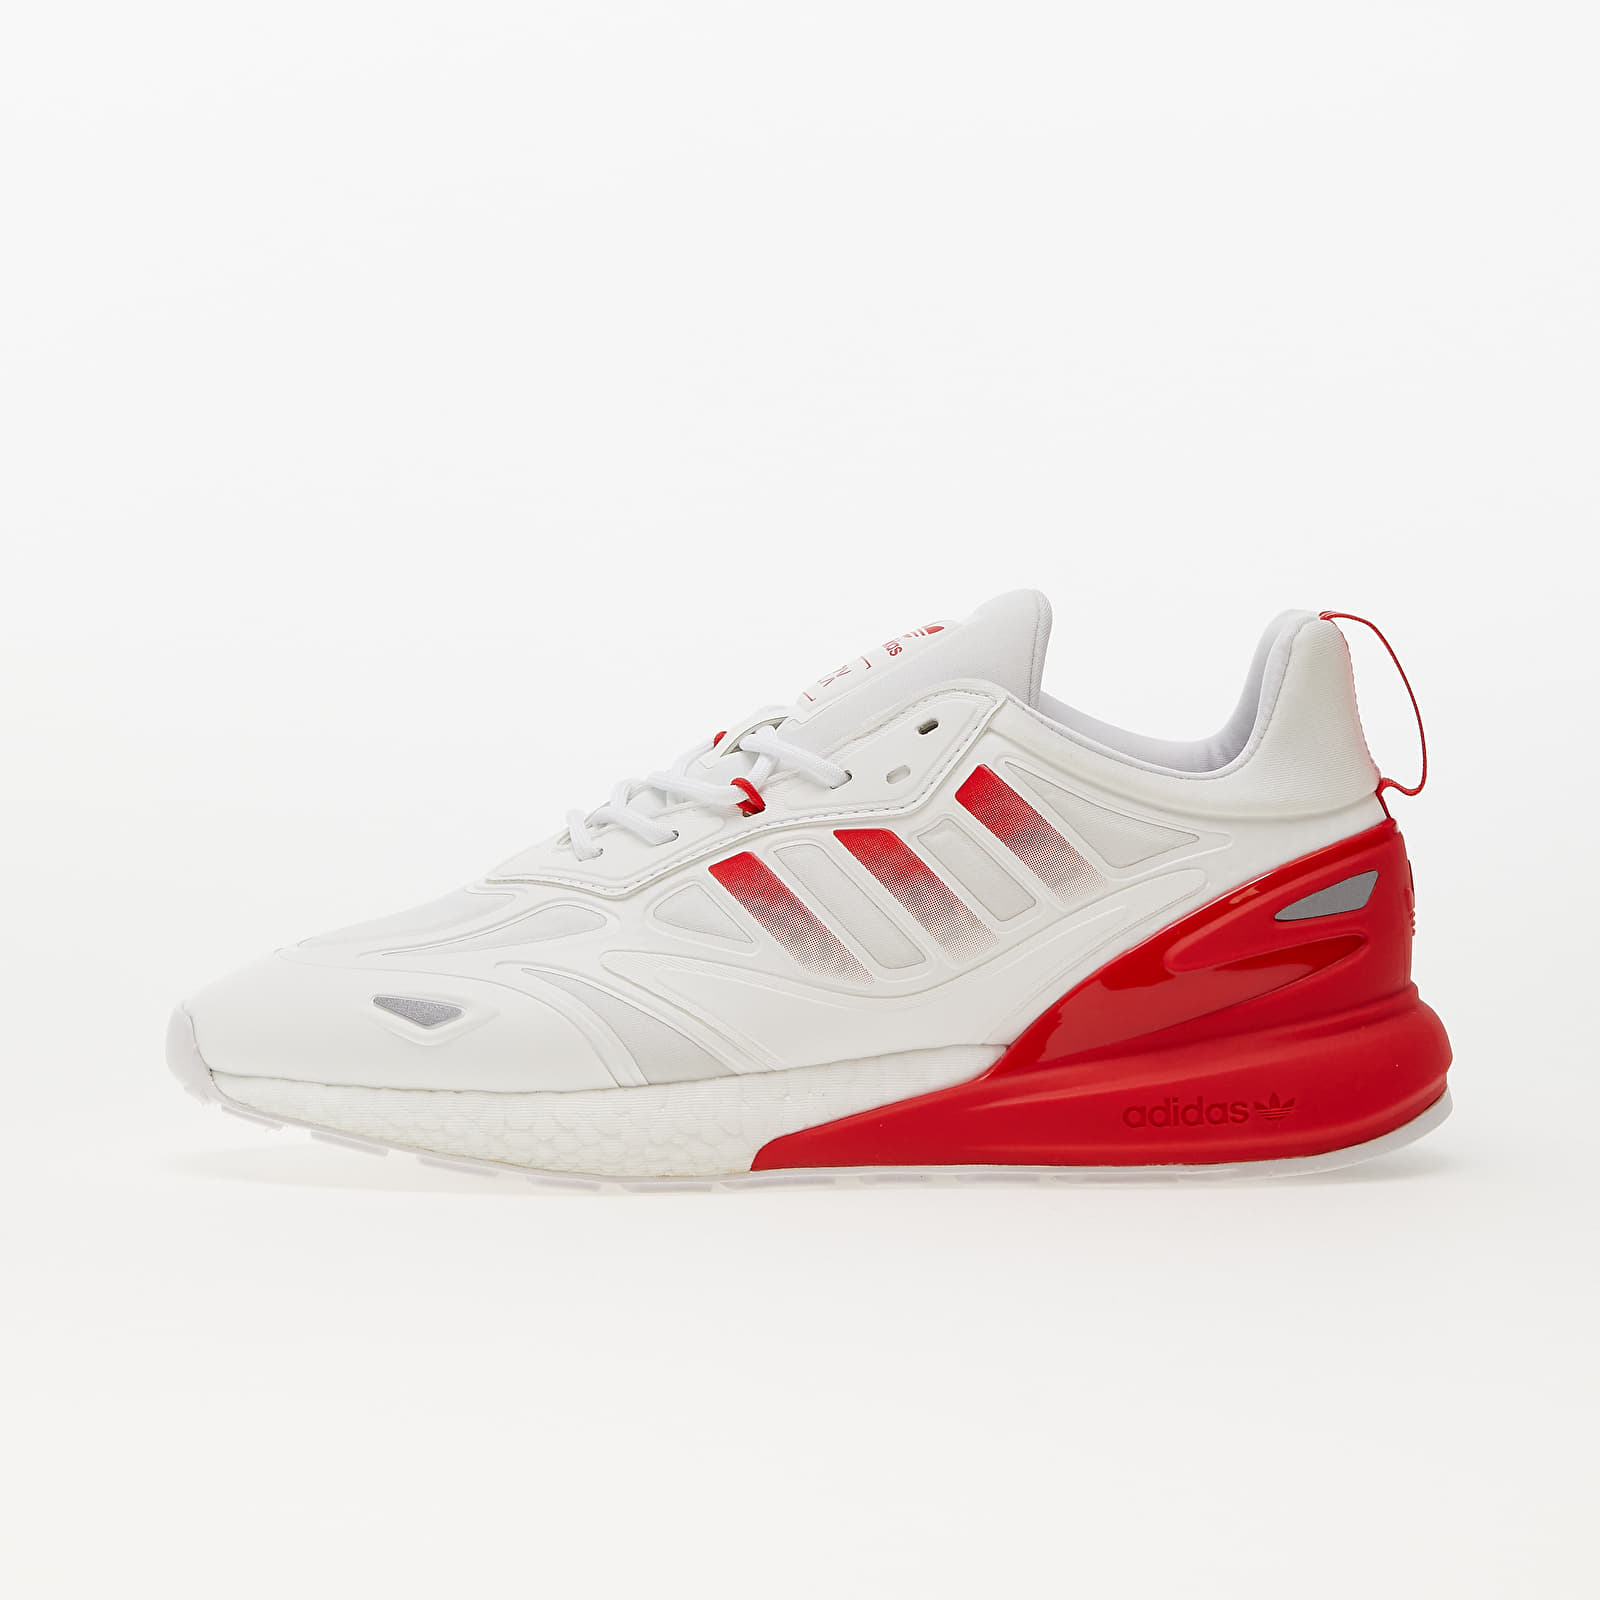 Herren Sneaker und Schuhe White/ Ftw Vivid 2K BOOST Silver adidas Footshop Red | Metalic/ 2.0 ZX